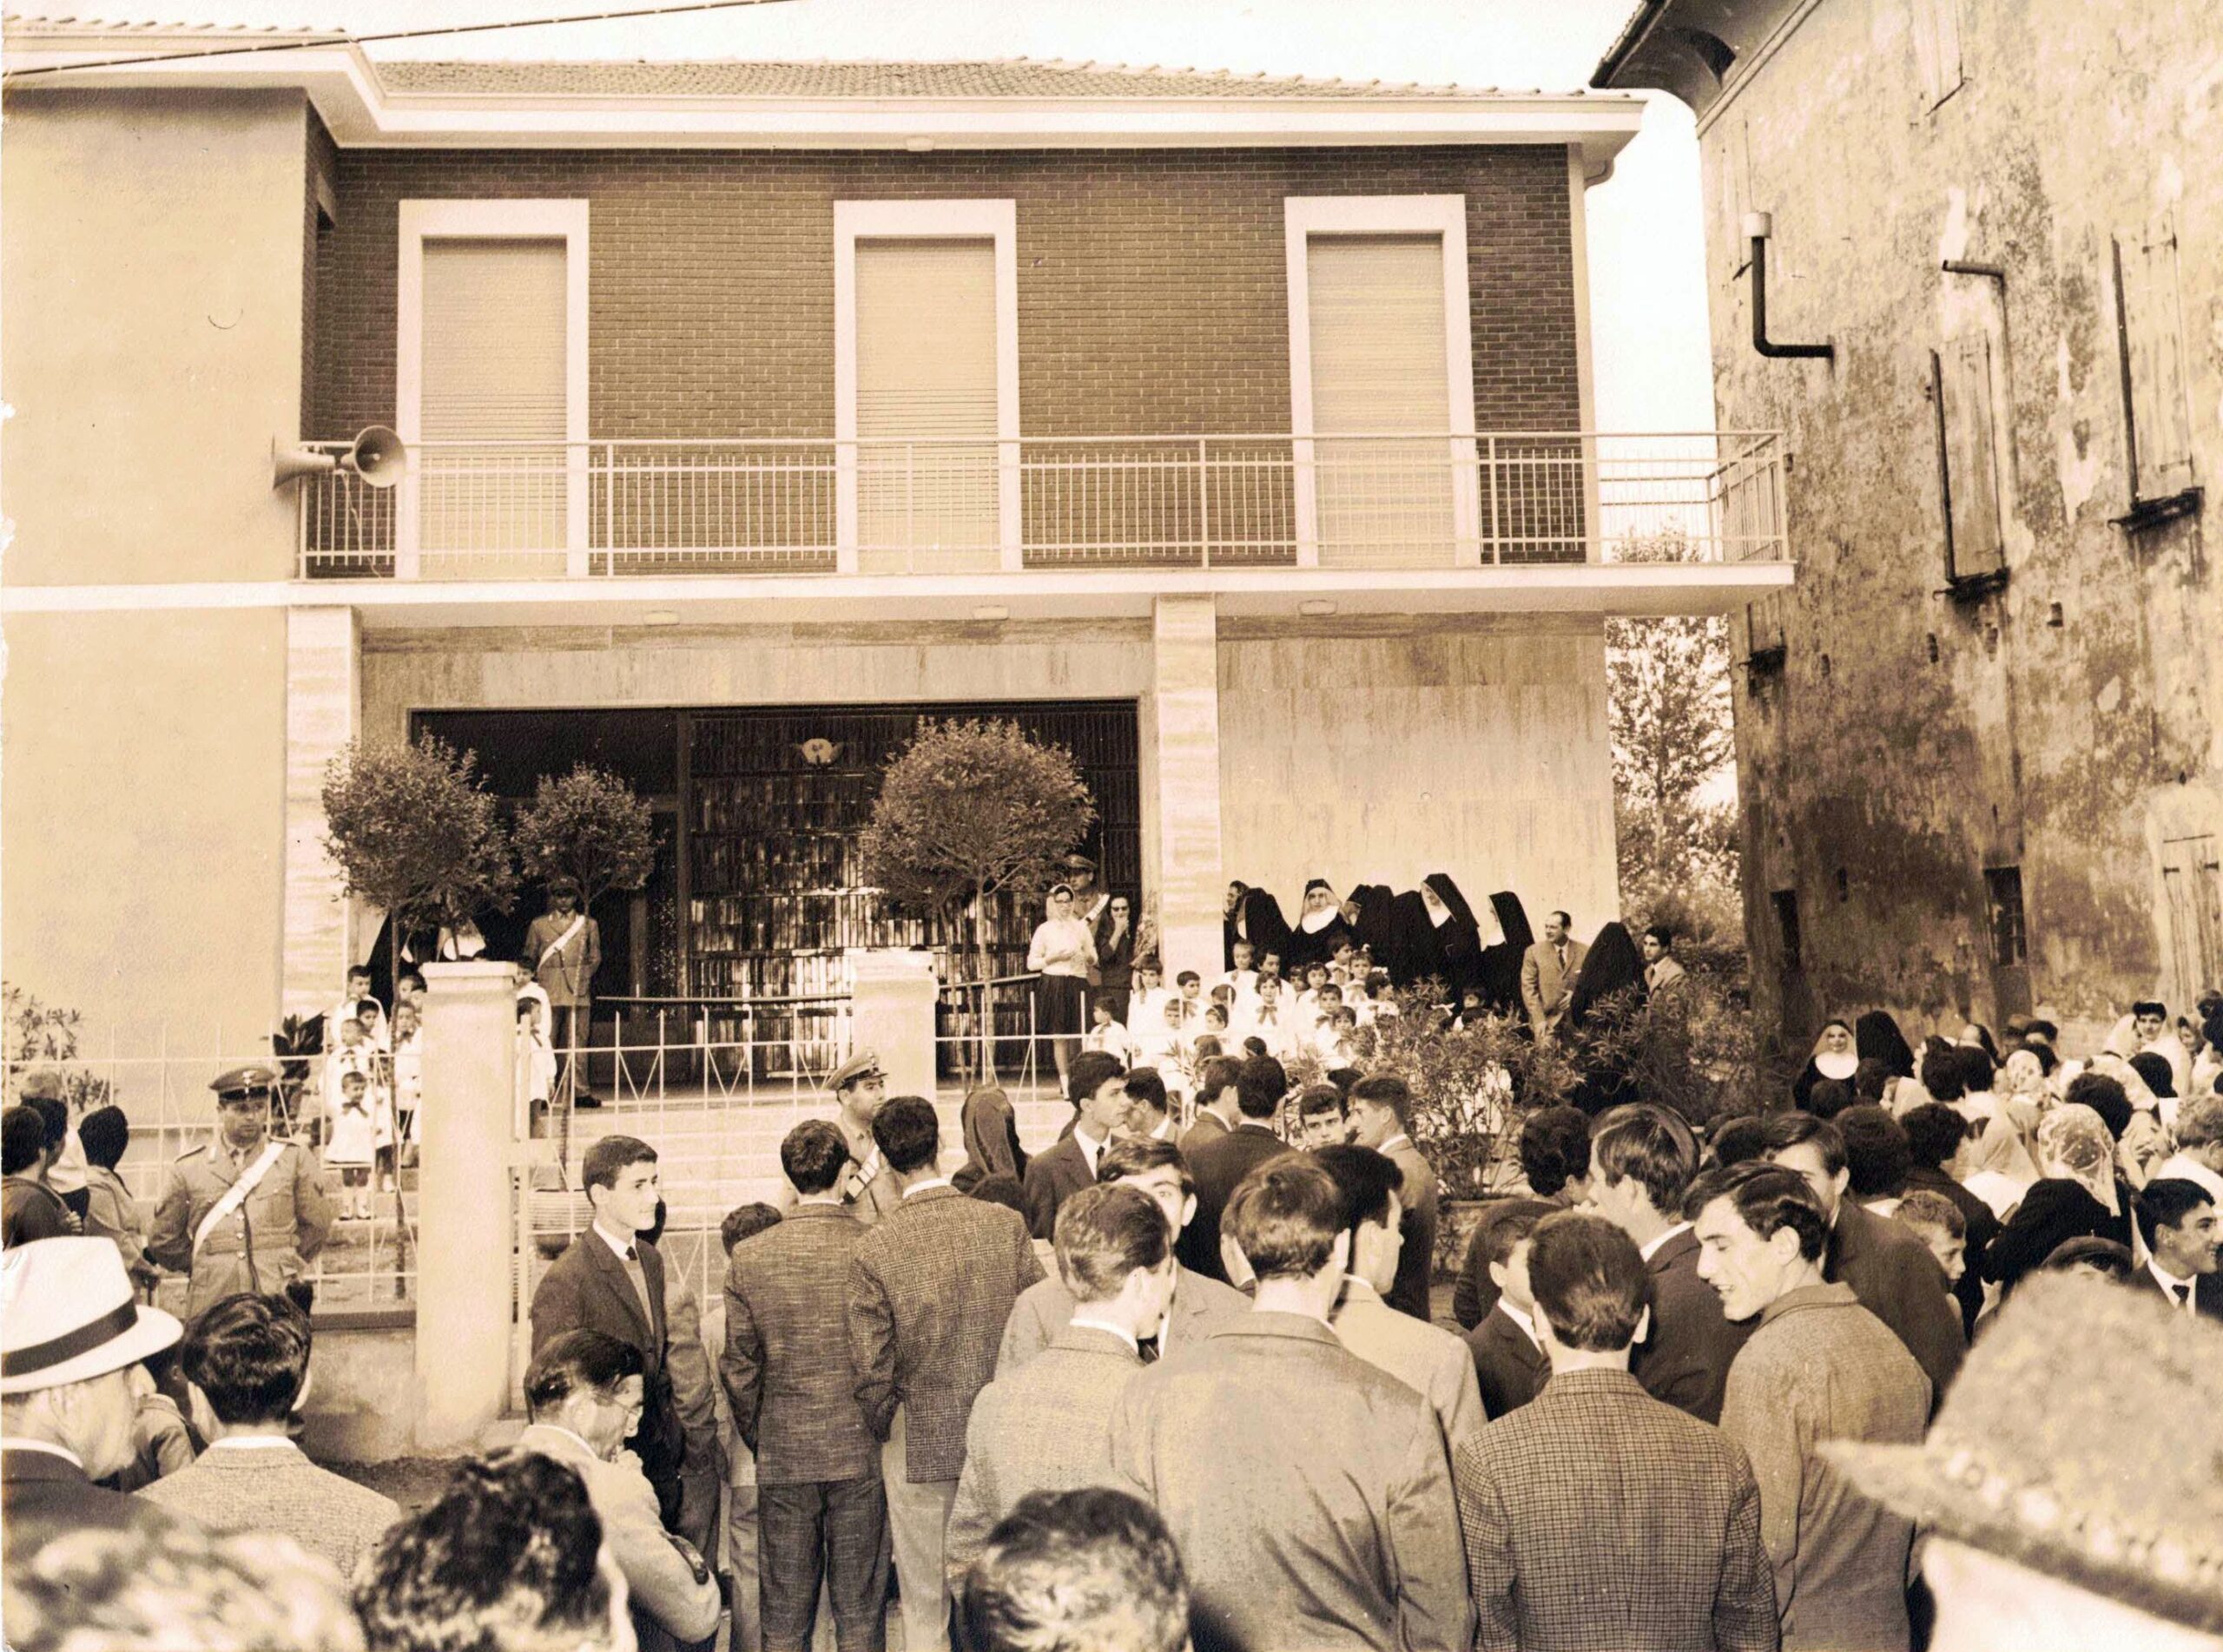 1962 inaugurazione nuova Scuola Materna “Sacro Cuore”